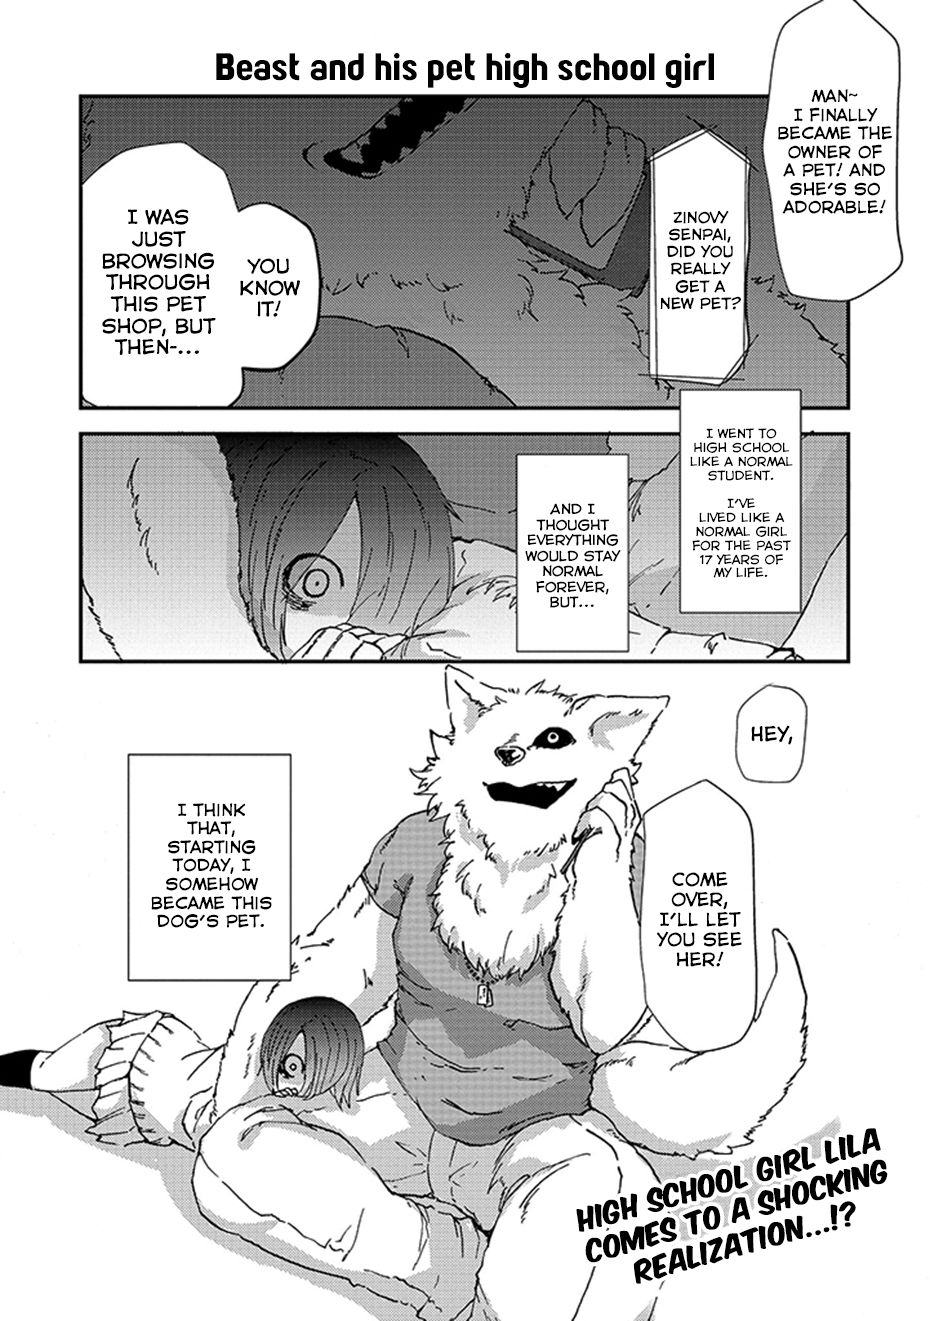 [Yakantuzura] The Beast and His Pet High School Girl Redux [English] (Updated: 7/13/15) 1